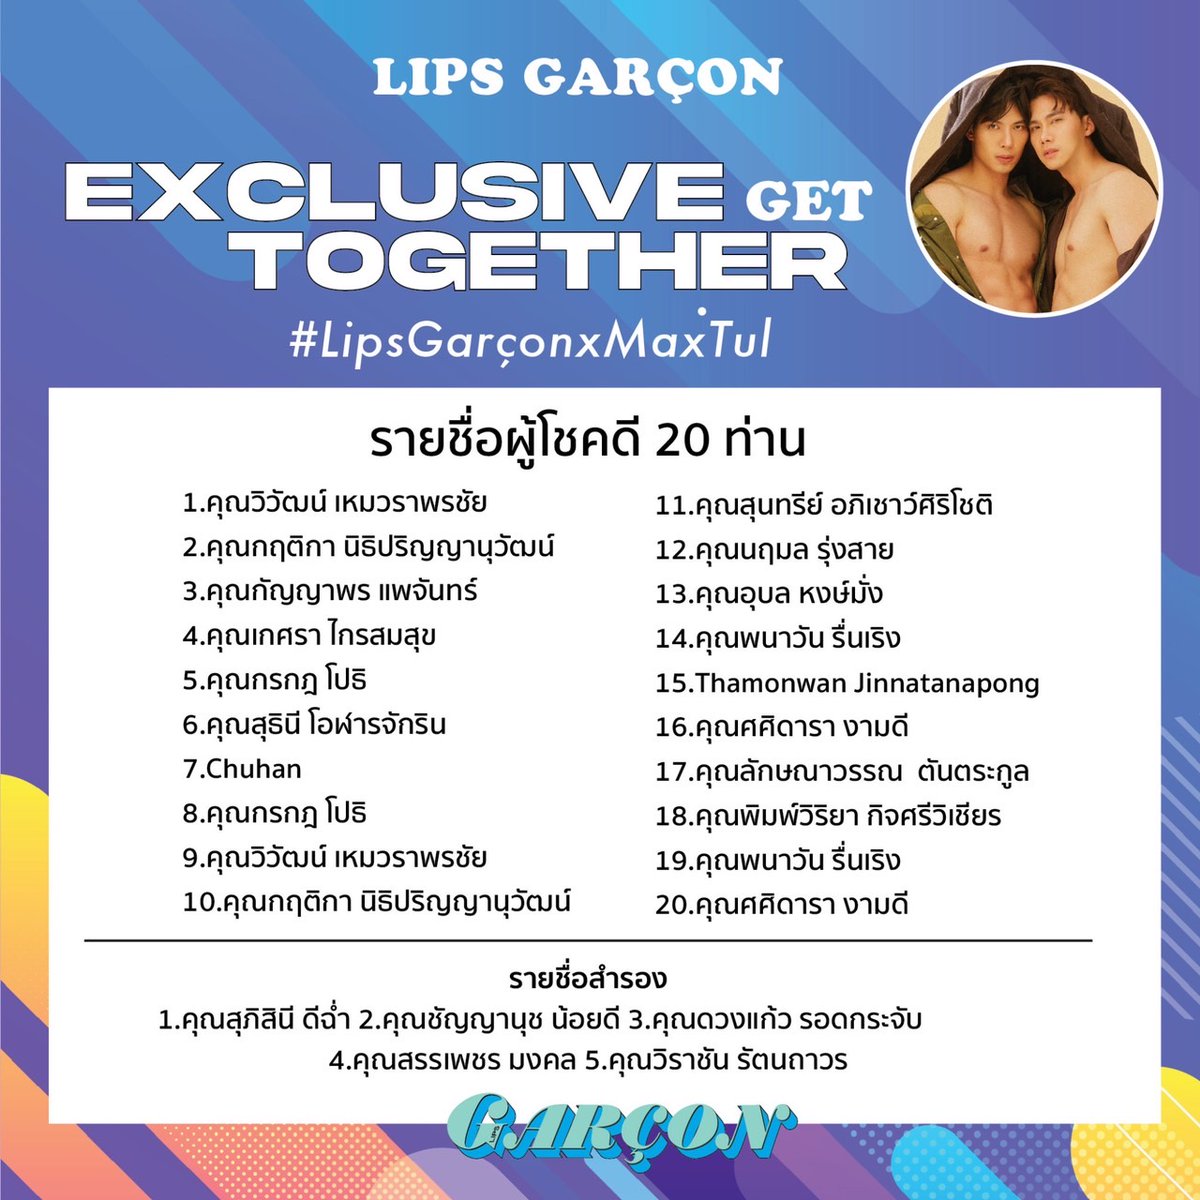 เตรียมตัวพบกับ LIPS GARCON ‘Exclusive Get Together’ กับ “โอห์ม-ฐิติวัฒน์, ฟลุ้ค-ณธัช, คิมม่อน-วโรดม, คอปเตอร์ - ภานุวัฒน์ และ แม็กซ์ - ณัฐพล ” วันจันทร์ที่ 27 มีนาคม 2023 ณ ลาน Atrium1 ชั้น G สยามเซ็นเตอร์ #LIPSGarçonxOhmFluke #LIPSGarçonxMaxTul #LIPSGarçonxKimmonCopter